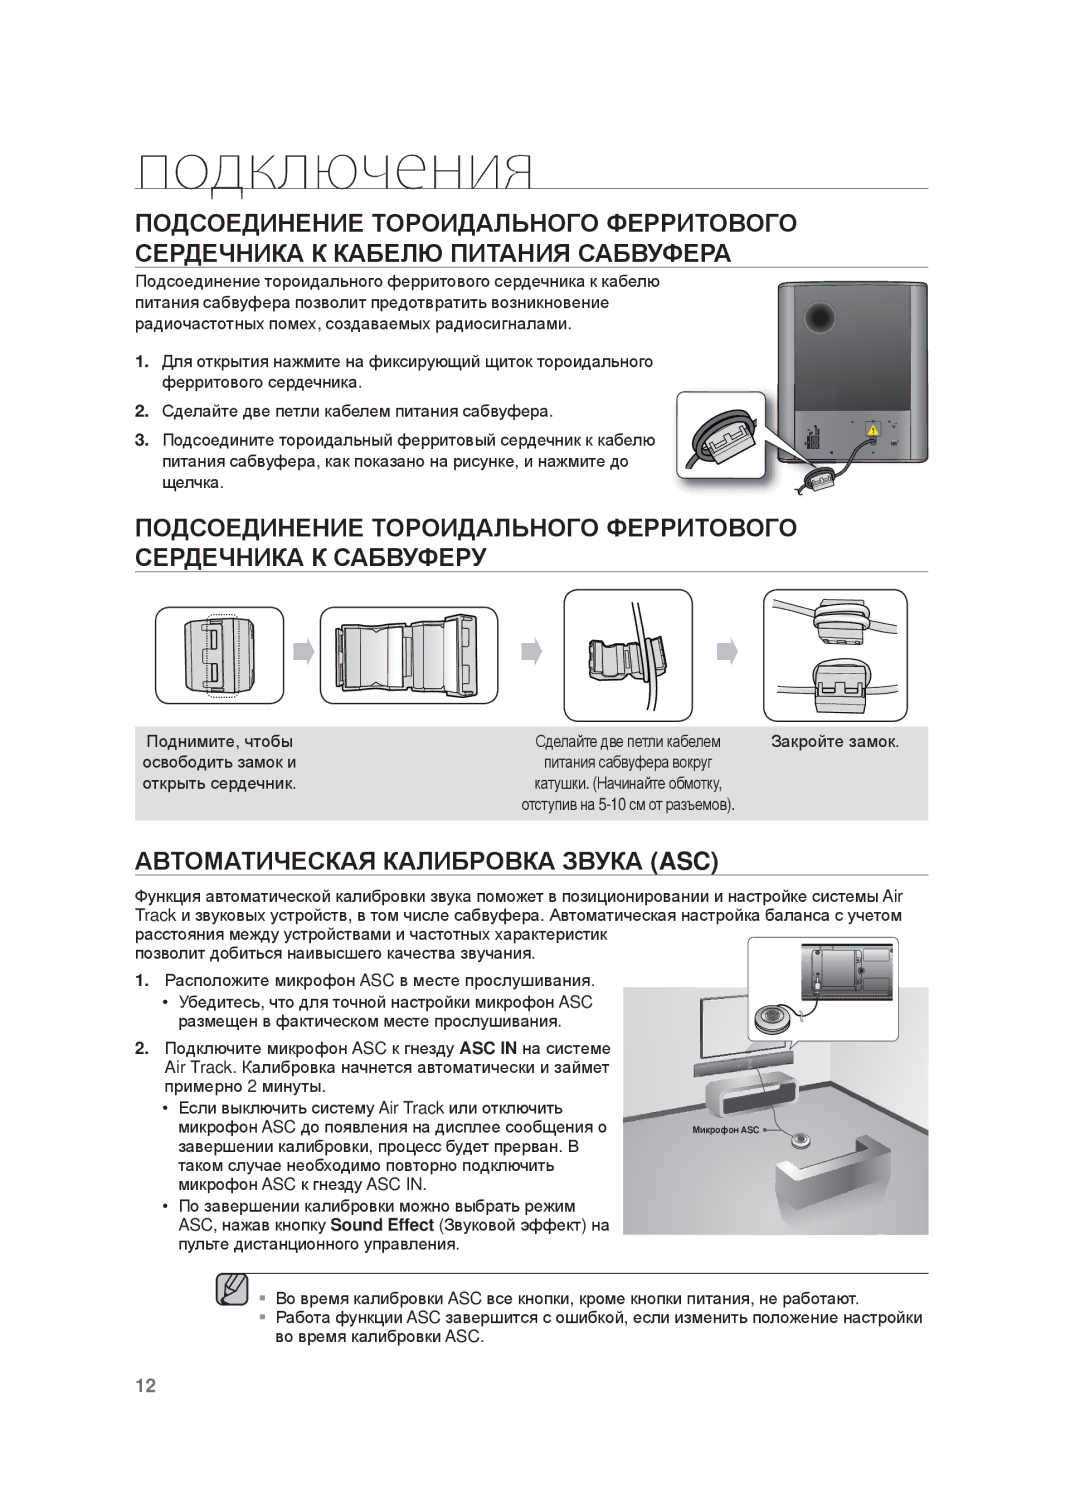 Samsung HW-F750/RU manual ȺȼɌɈɆȺɌИЧȿɋКȺЯ КȺЛИБɊɈȼКȺ ЗȼУКȺ ASC, Ɉɨɞɧɢɦɢɬɟ, ɱɬɨɛɵ, Ɂɚɤɪɨɣɬɟ ɡɚɦɨɤ, Ɨɫɜɨɛɨɞɢɬɶ ɡɚɦɨɤ ɢ 